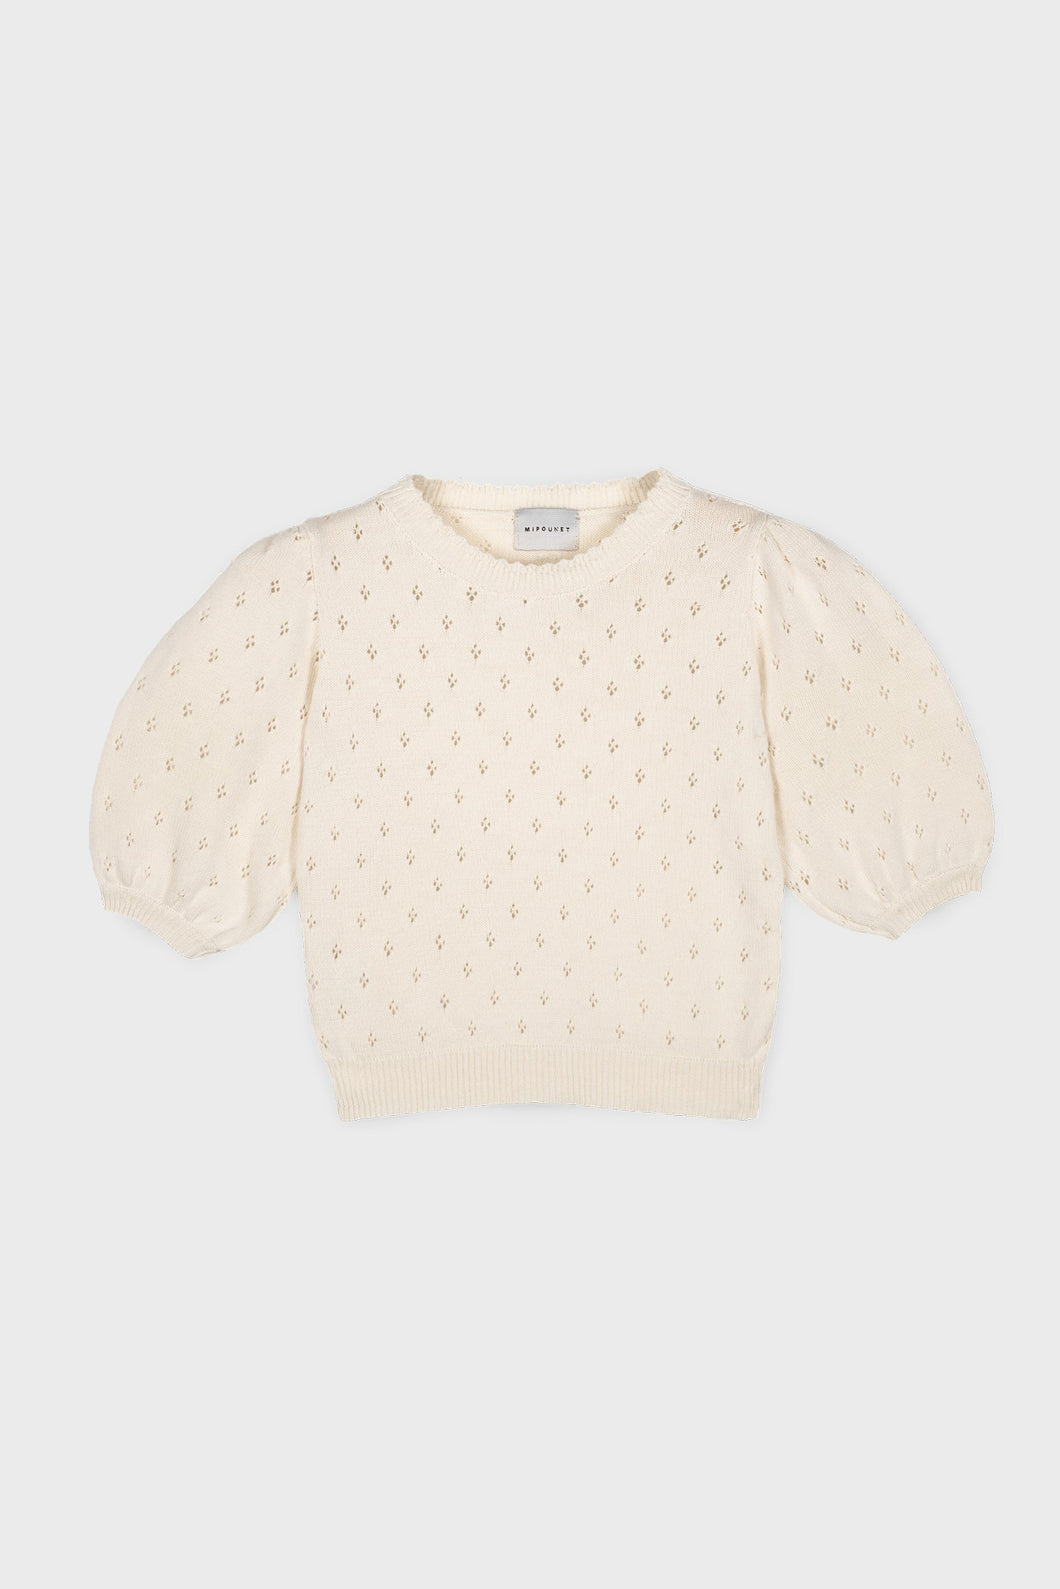 Mipounet Cotton Openwork Sweater - Ecru/Camel - 6Y Last Ones